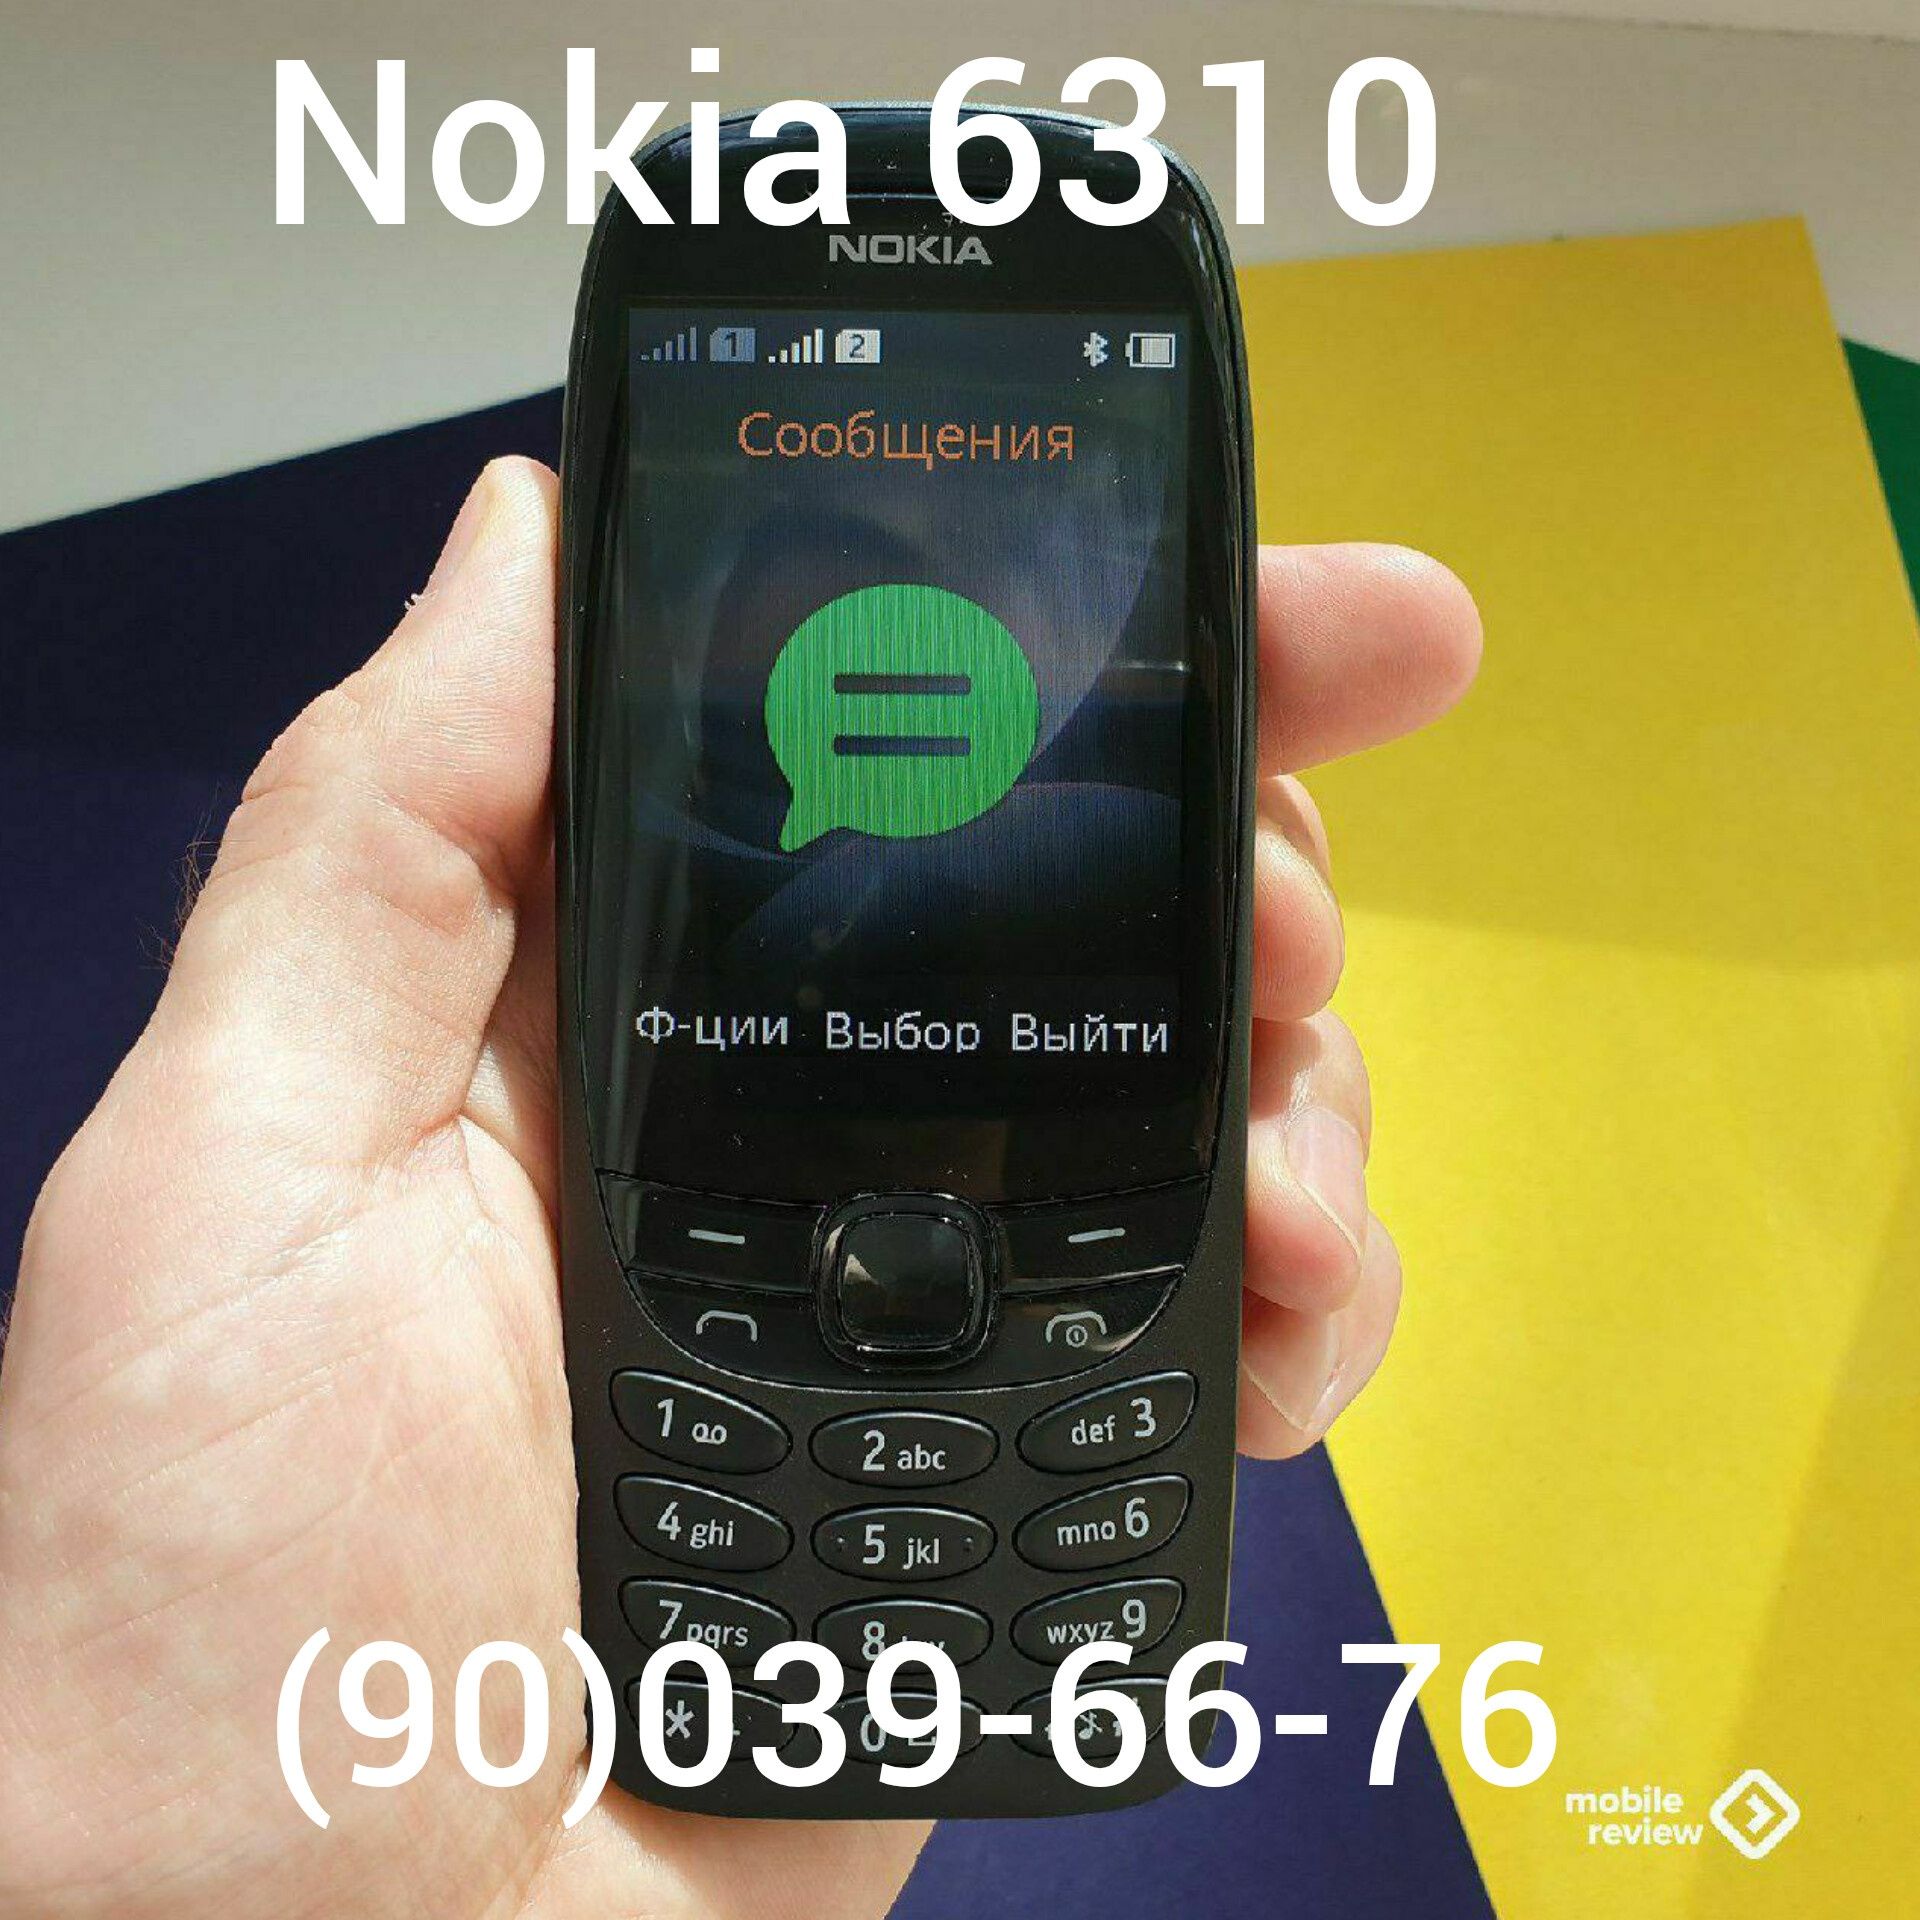 Nokia5310,Nokia6300,Nokia150,Nokia3310,Nokia6310,Nokia225,Nokia8110ban